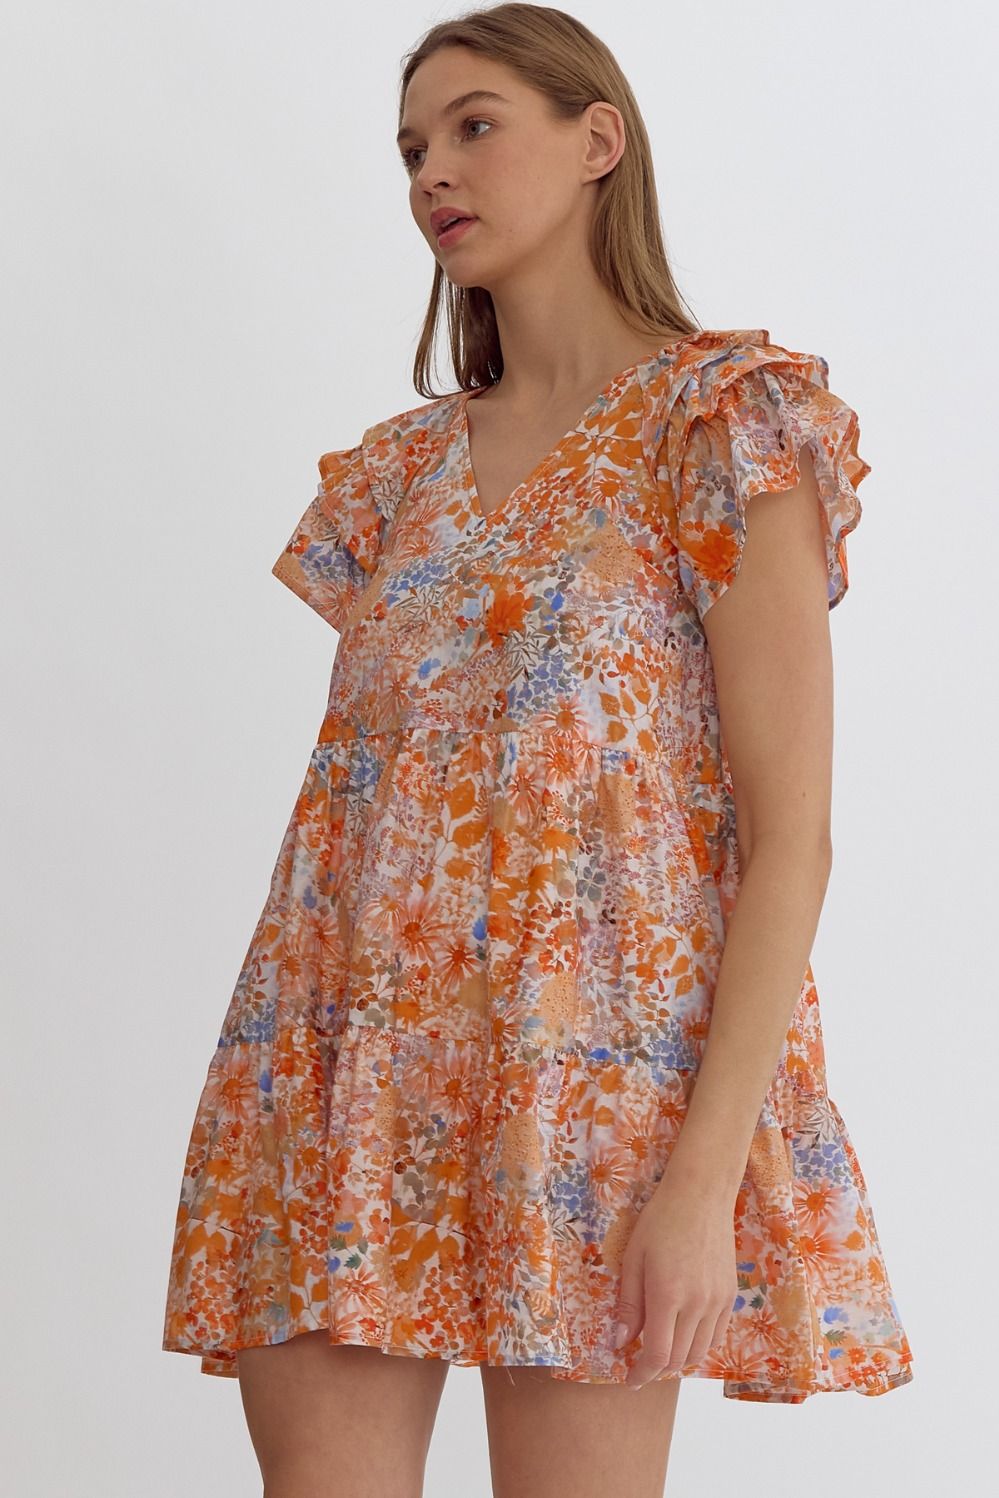 Garden Variety Dress - Orange